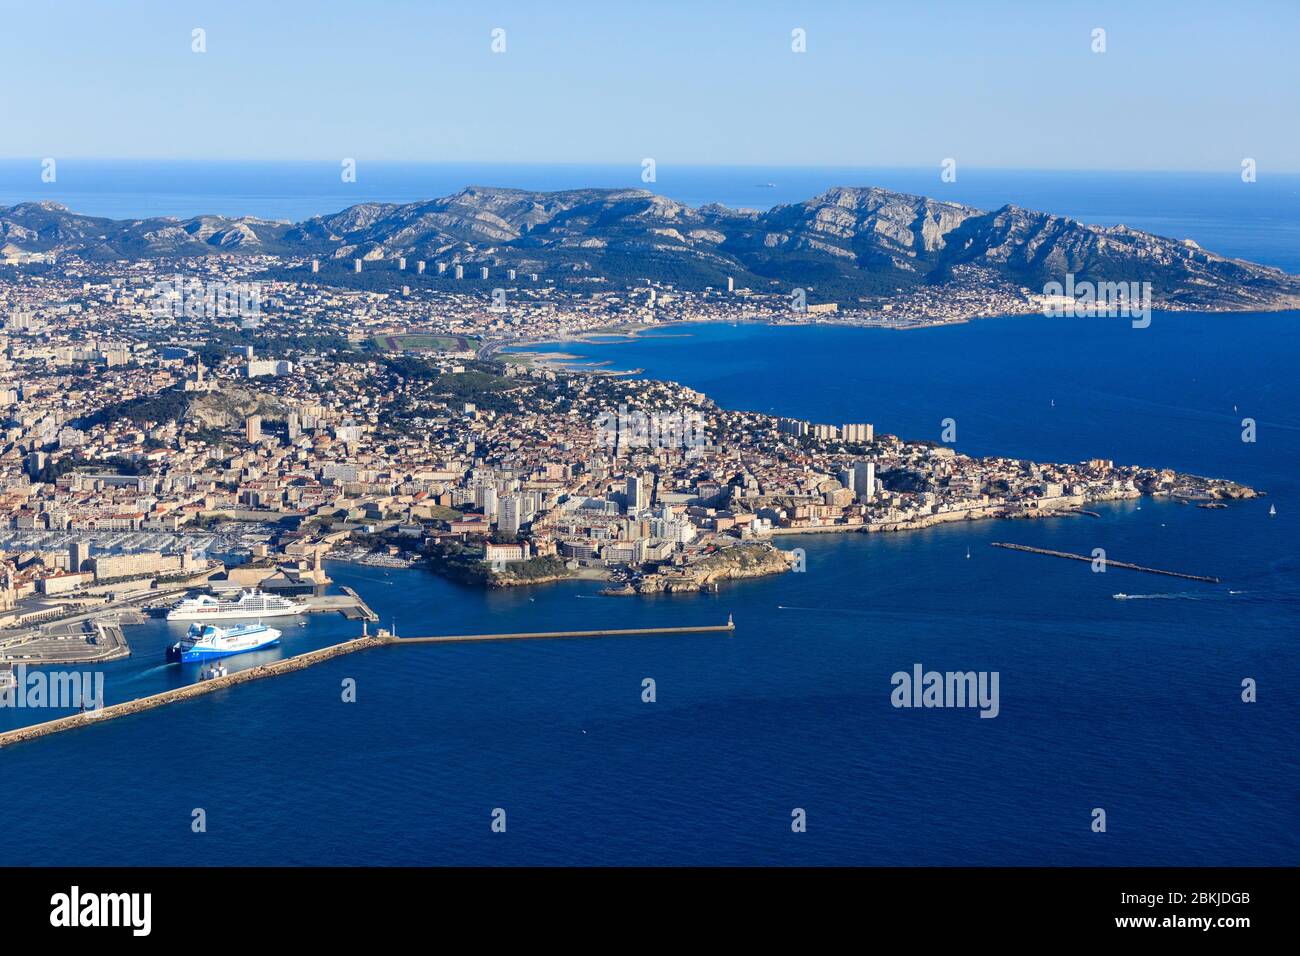 https://c8.alamy.com/comp/2BKJDGB/france-bouches-du-rhone-marseille-la-digue-du-large-before-port-of-la-joliette-entrance-to-the-old-port-pointe-du-pharo-anse-et-digue-des-catalans-pointe-dendoume-massif-de-marseilleveyre-in-the-background-aerial-view-2BKJDGB.jpg